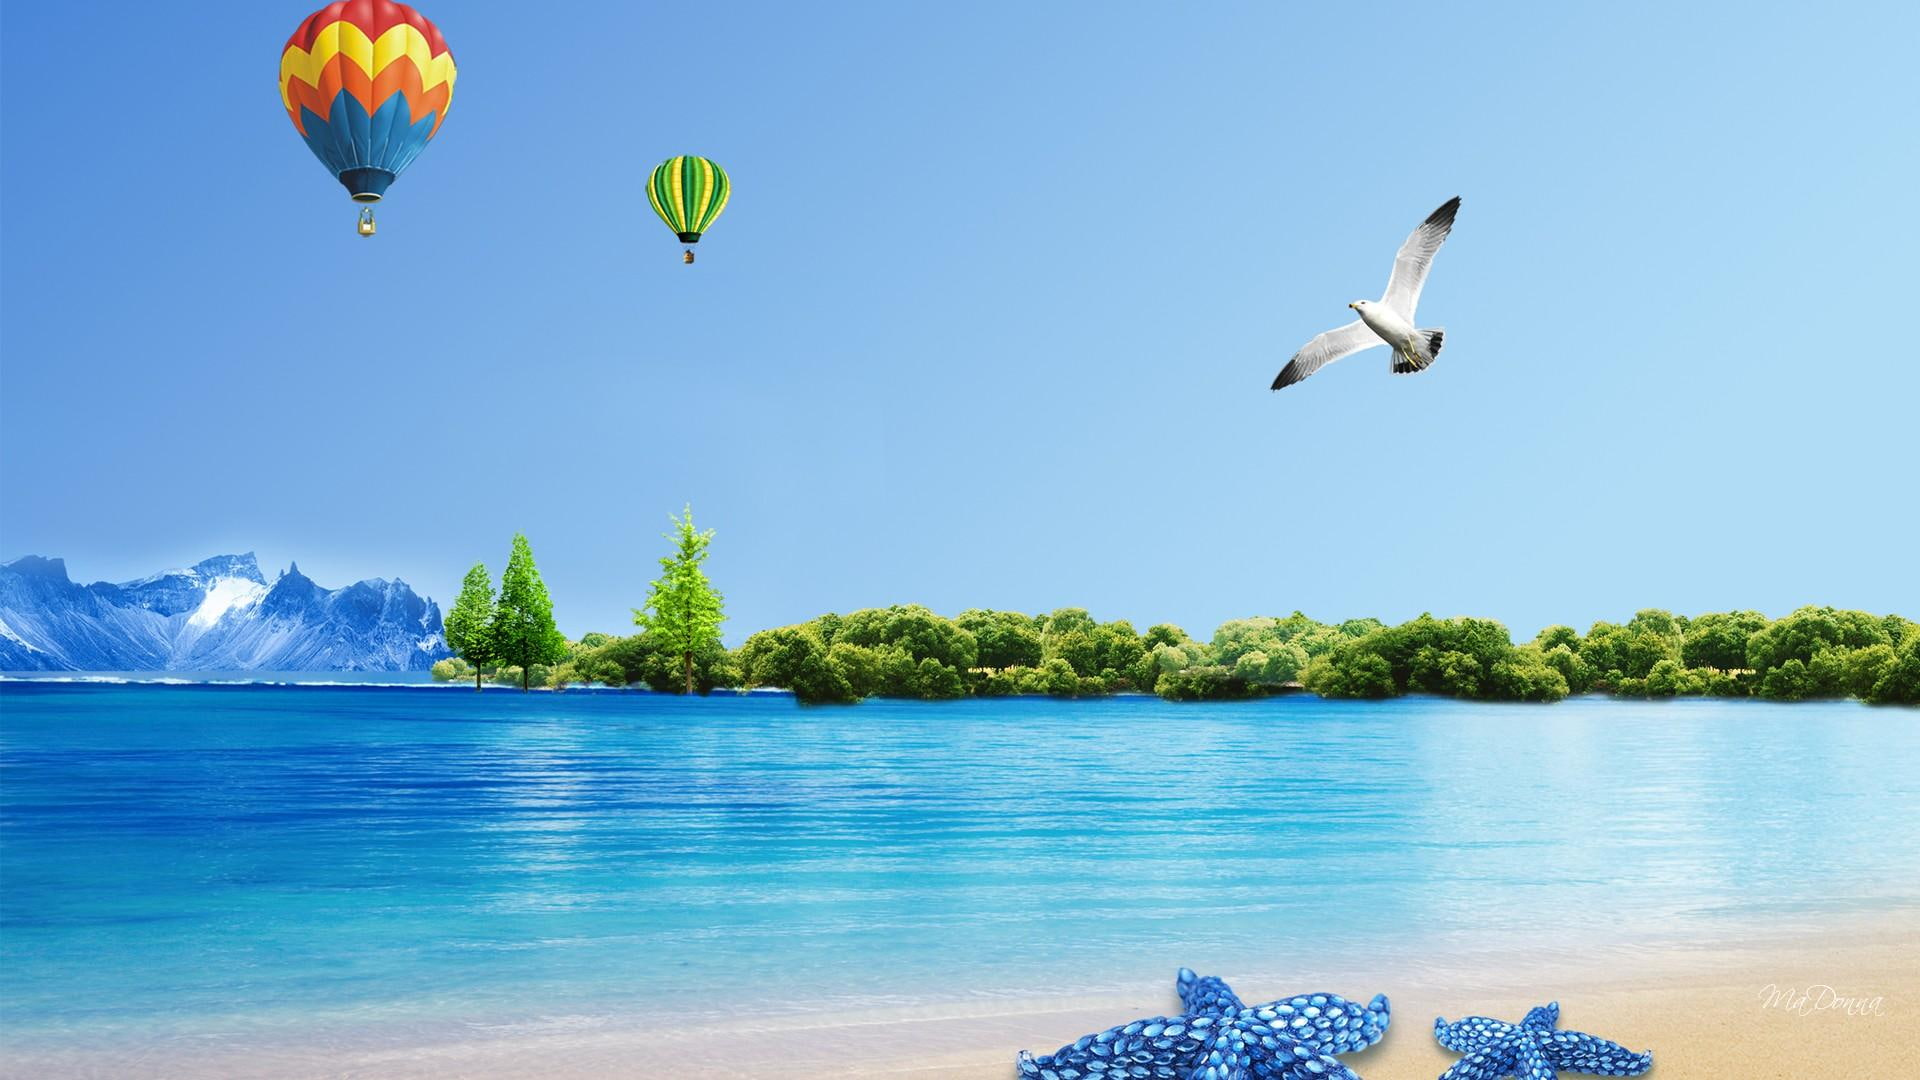 Balloon Fun Summer, mountain, trees, spring, beach, birds, ocean